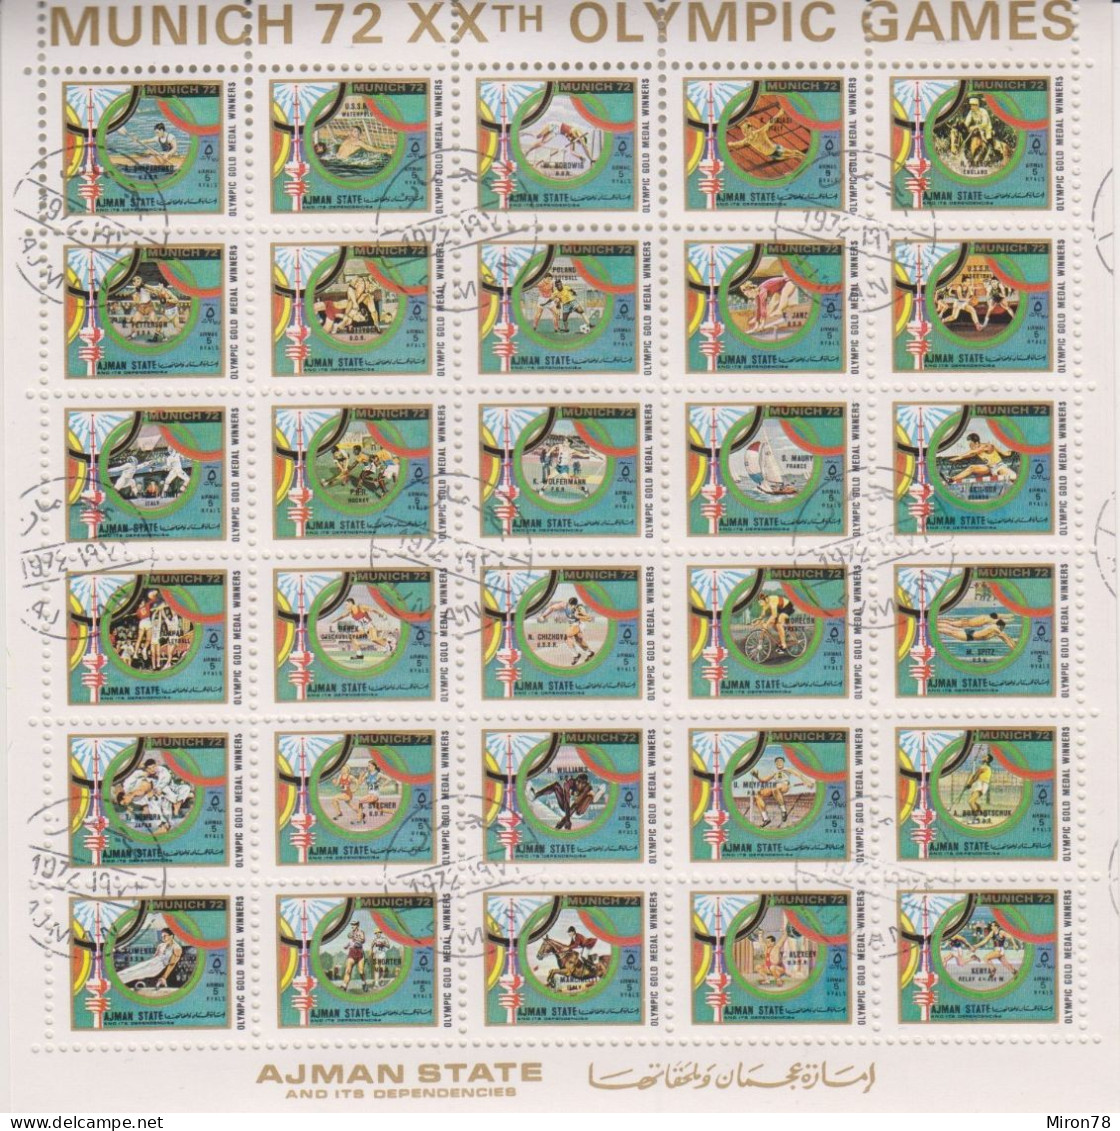 AJMAN OLYMPIC GAMES MUNICH 1972 #1605-34 SH USED (MNH-MICHEL 150 EURO!!!) - Verano 1972: Munich